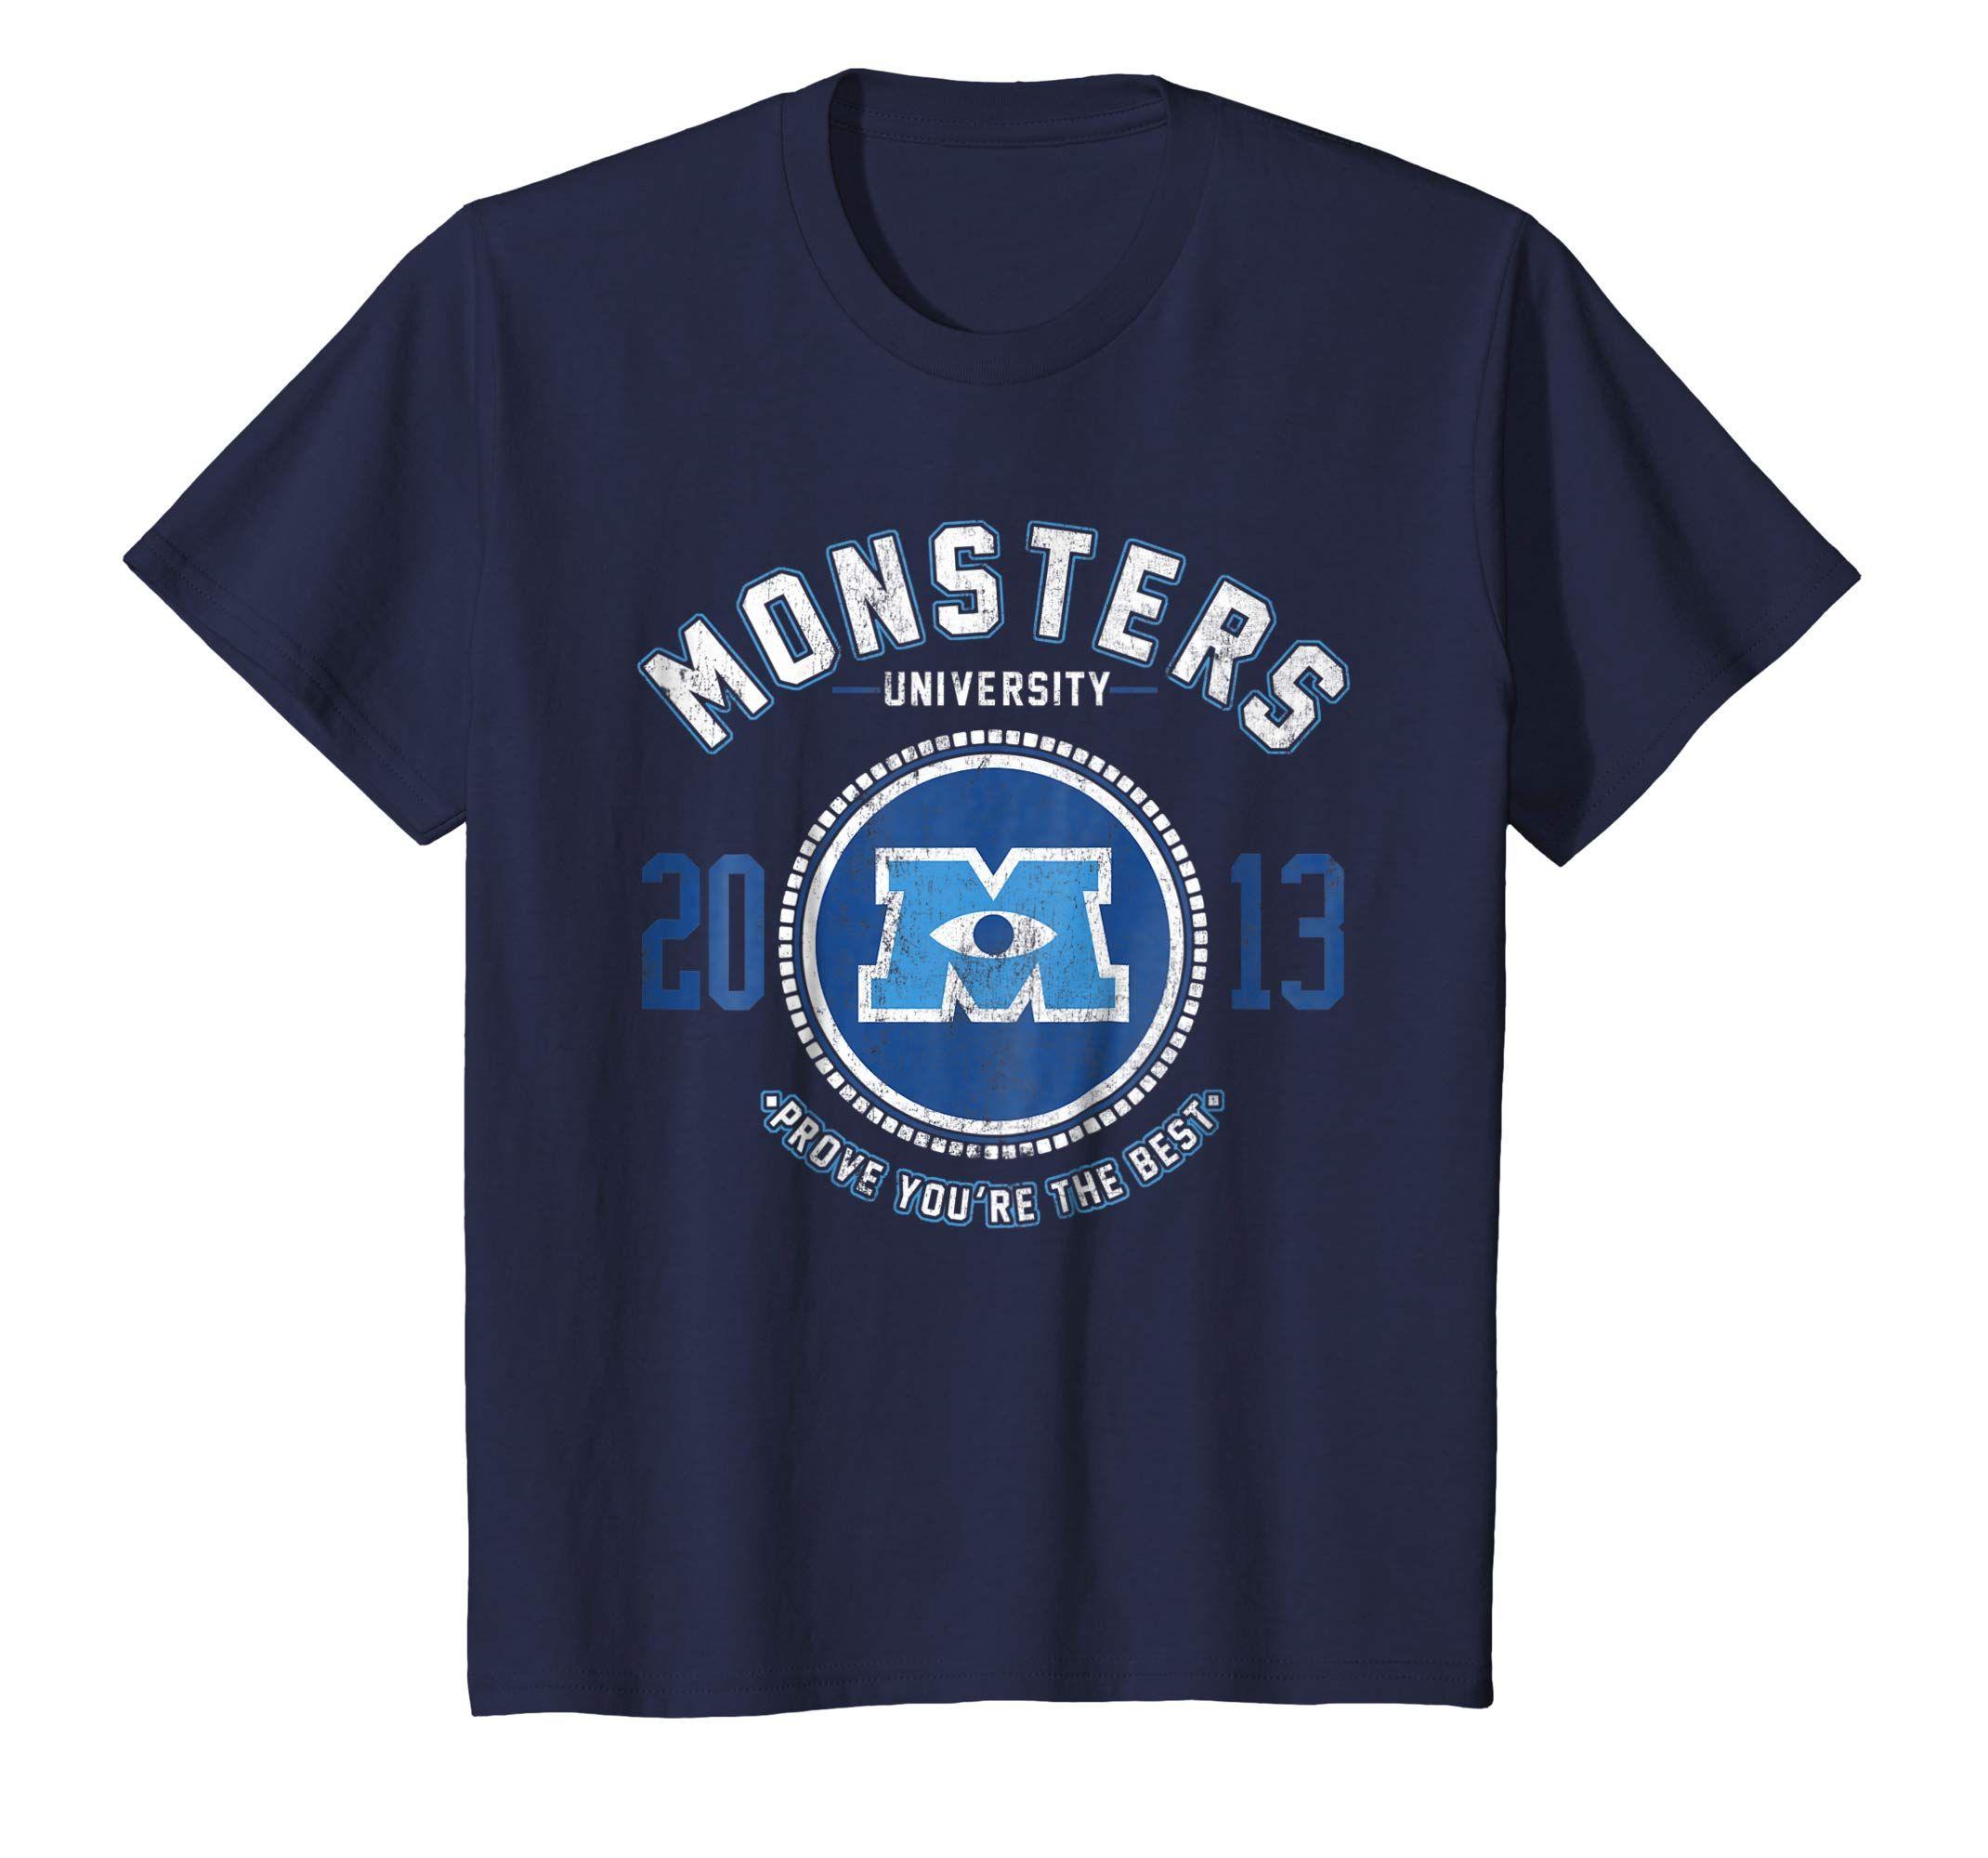 Monsters University Logo - Amazon.com: Disney Monsters University Logo Graphic T-Shirt: Clothing